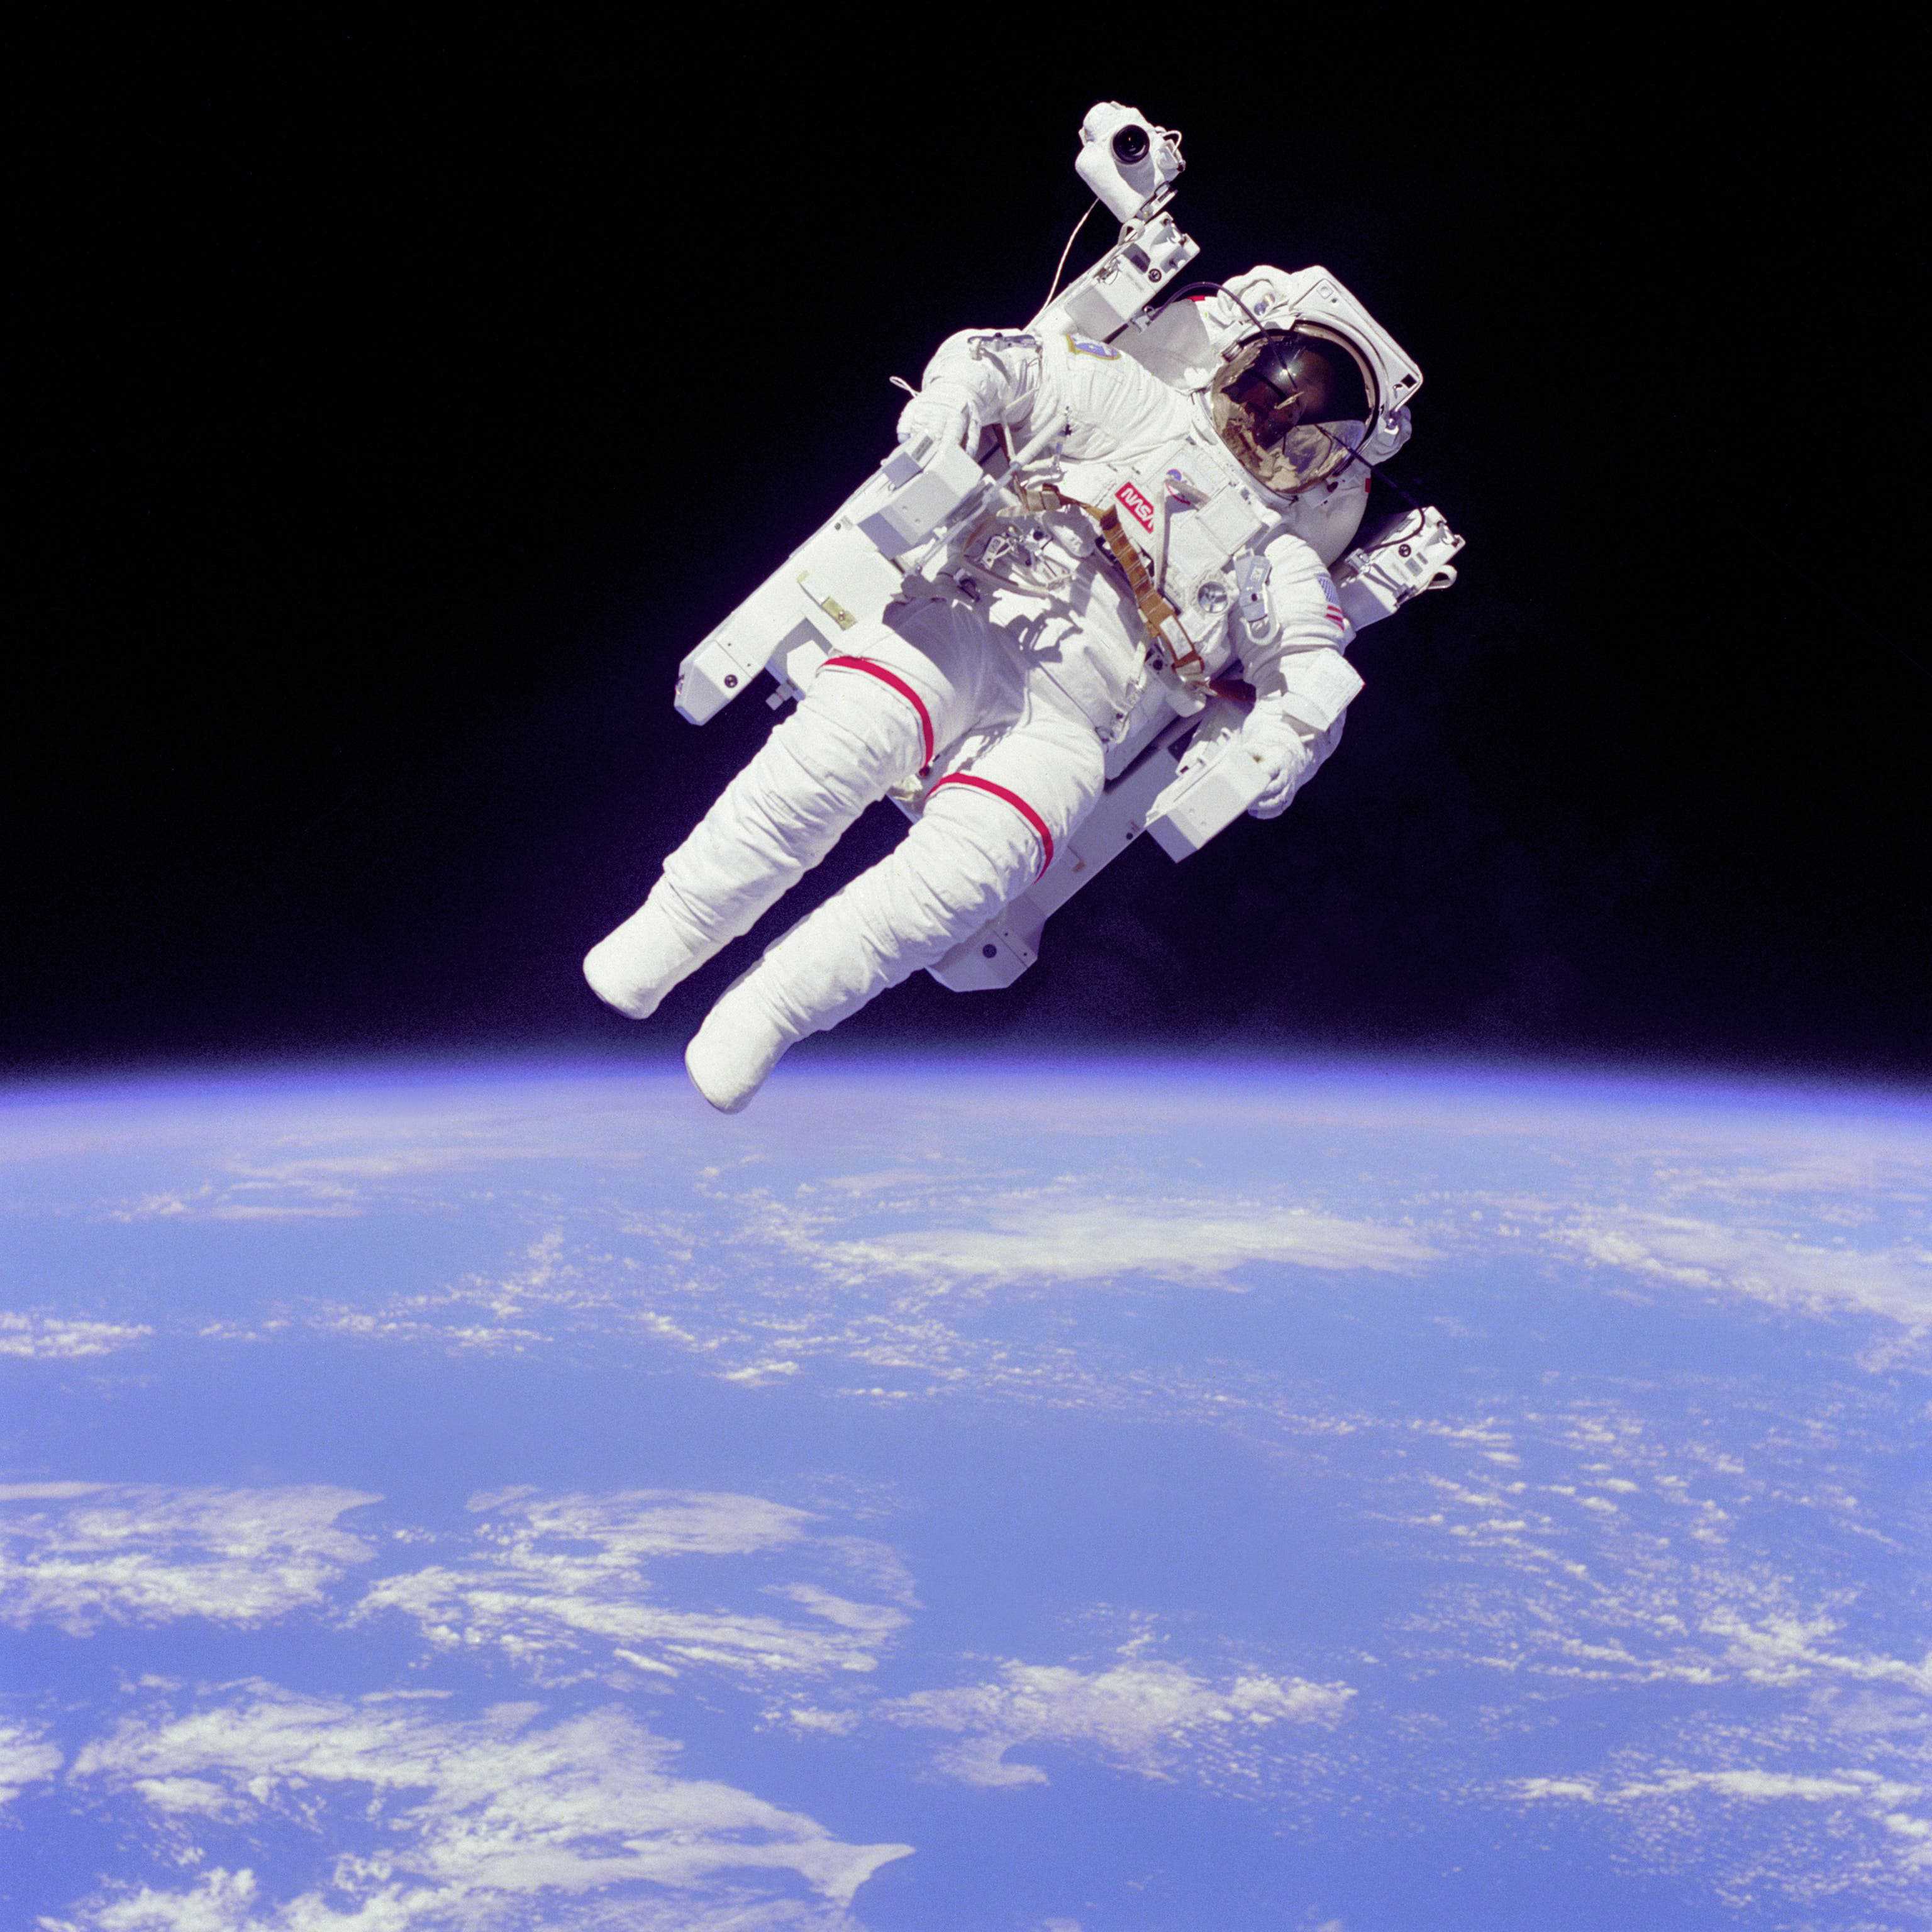 Astronauts still use Apollo-era designed space suits. Credit: Wikimedia Commons.